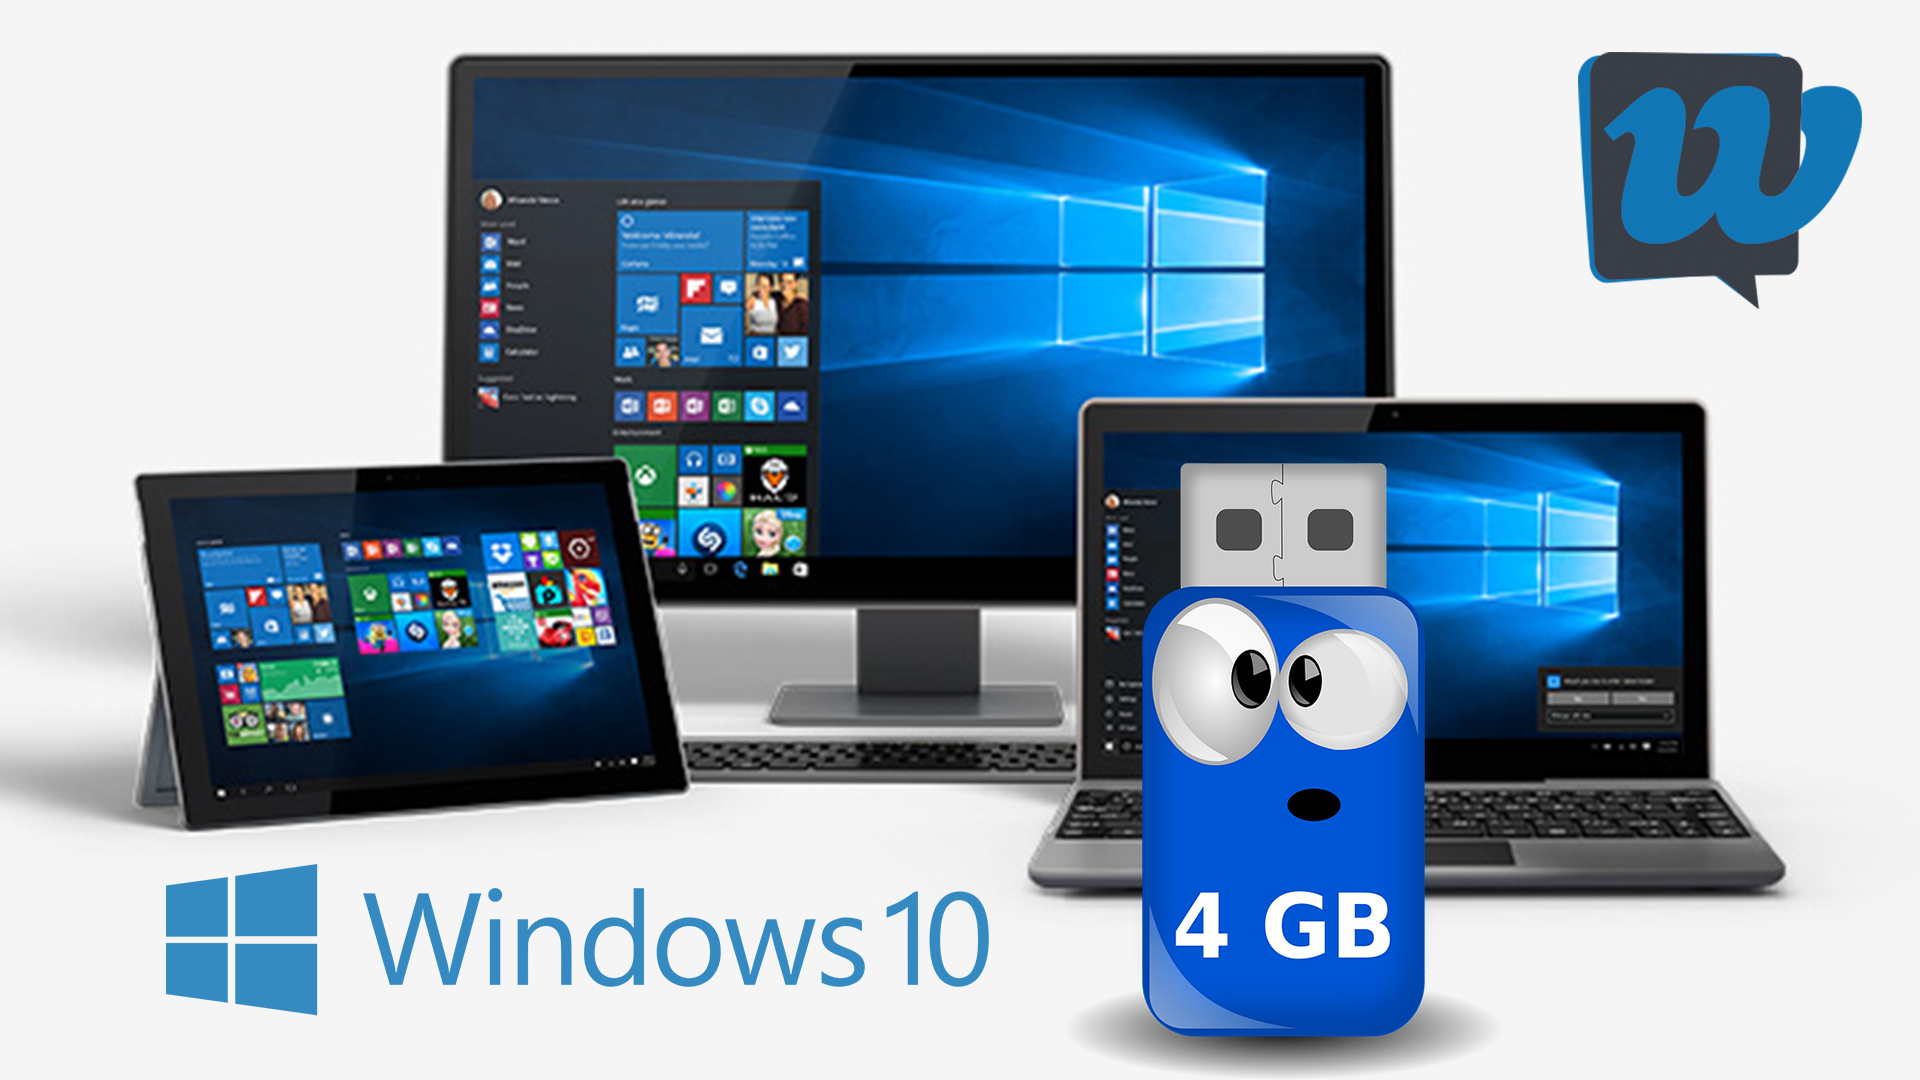 Come installare Windows 10 da una chiavetta USB